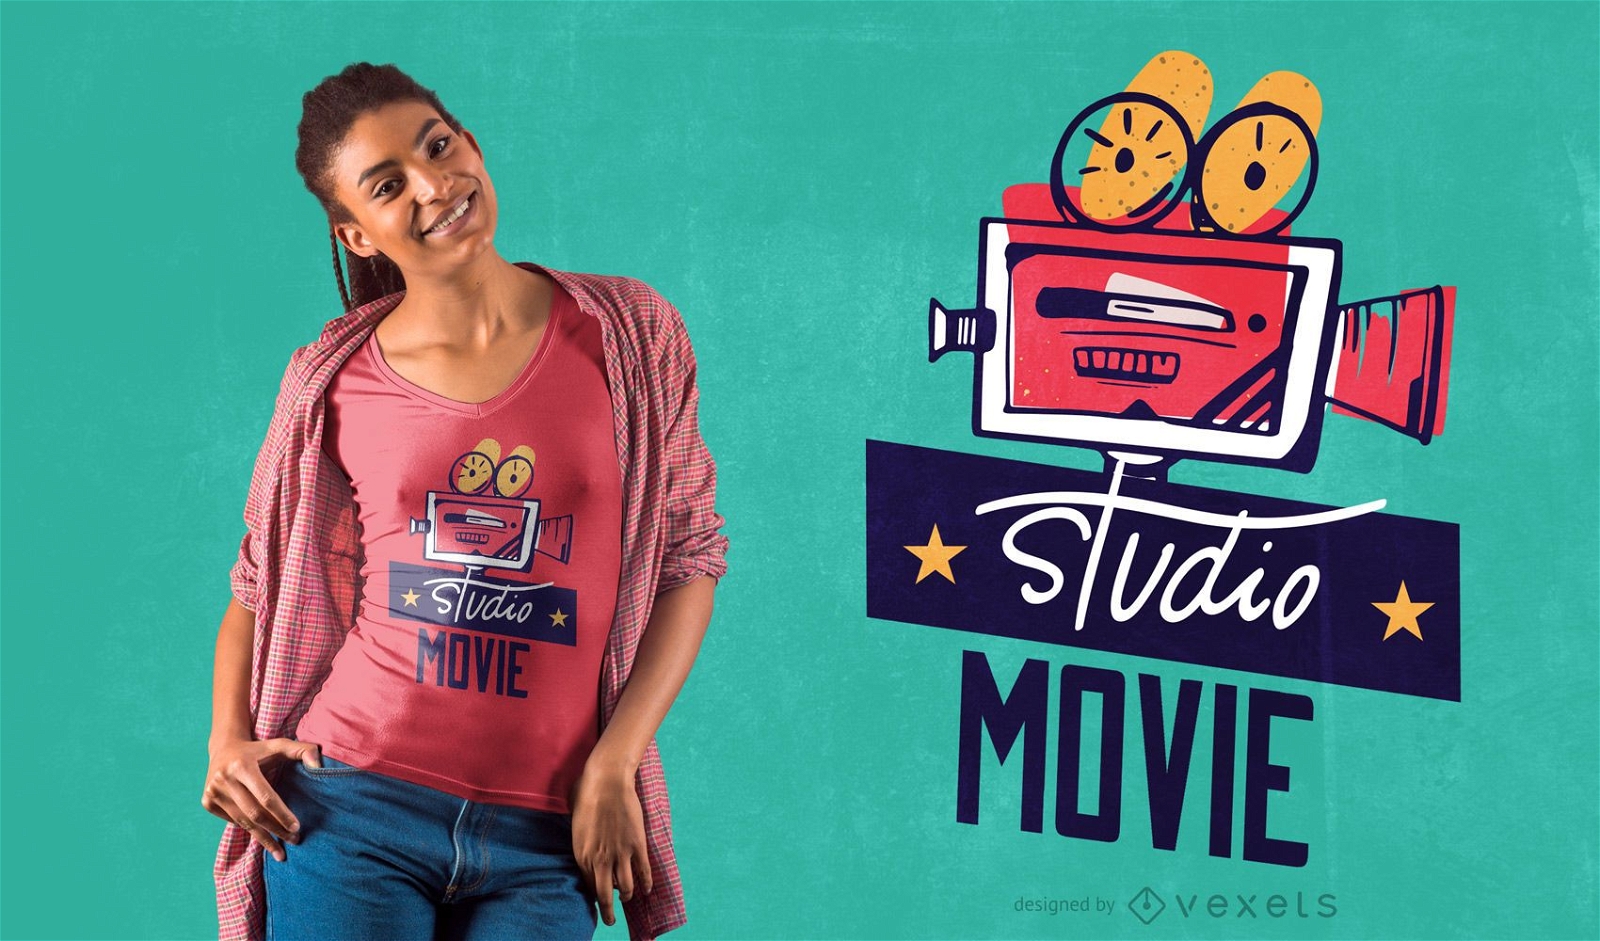 Studio movie t-shirt design